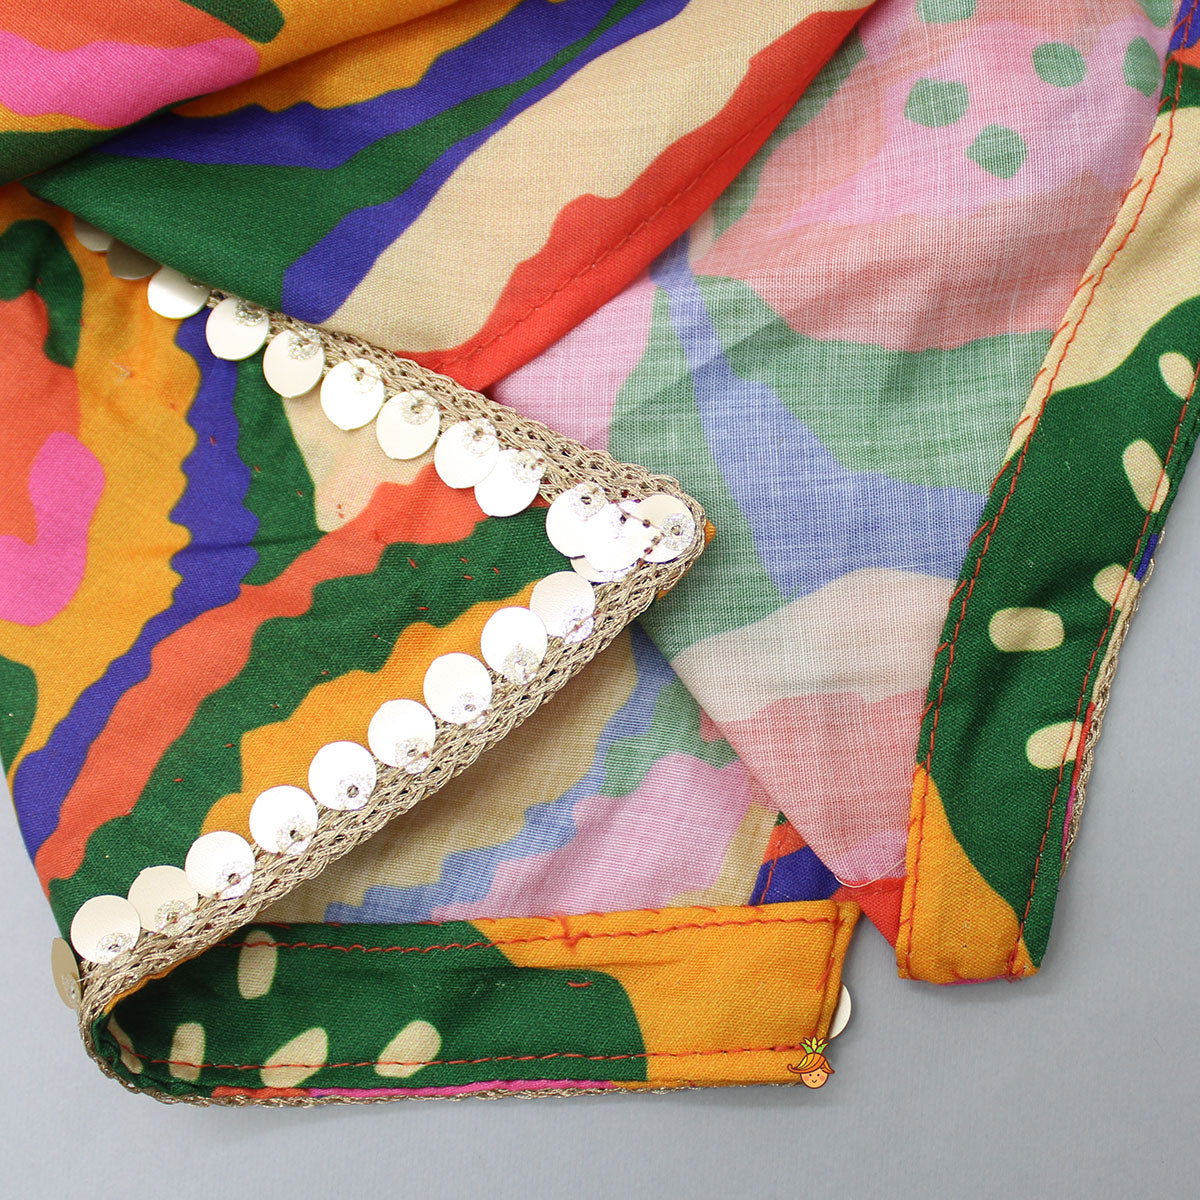 Pleated Stylish Hem Multicolour Kurta And Pyjama